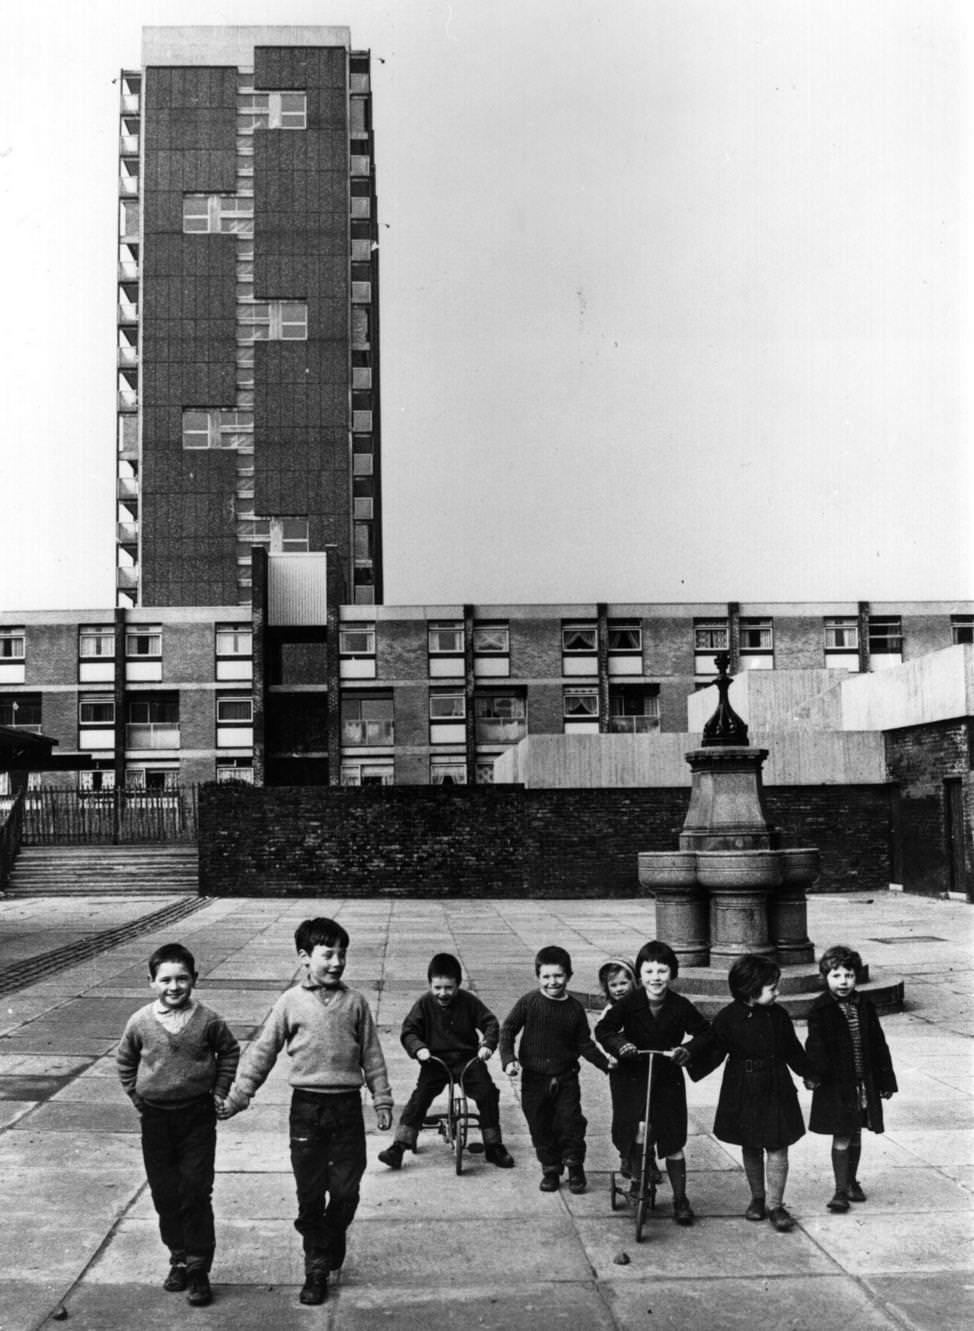 Children in the rebuilt Gorbals, Glasgow, 1960